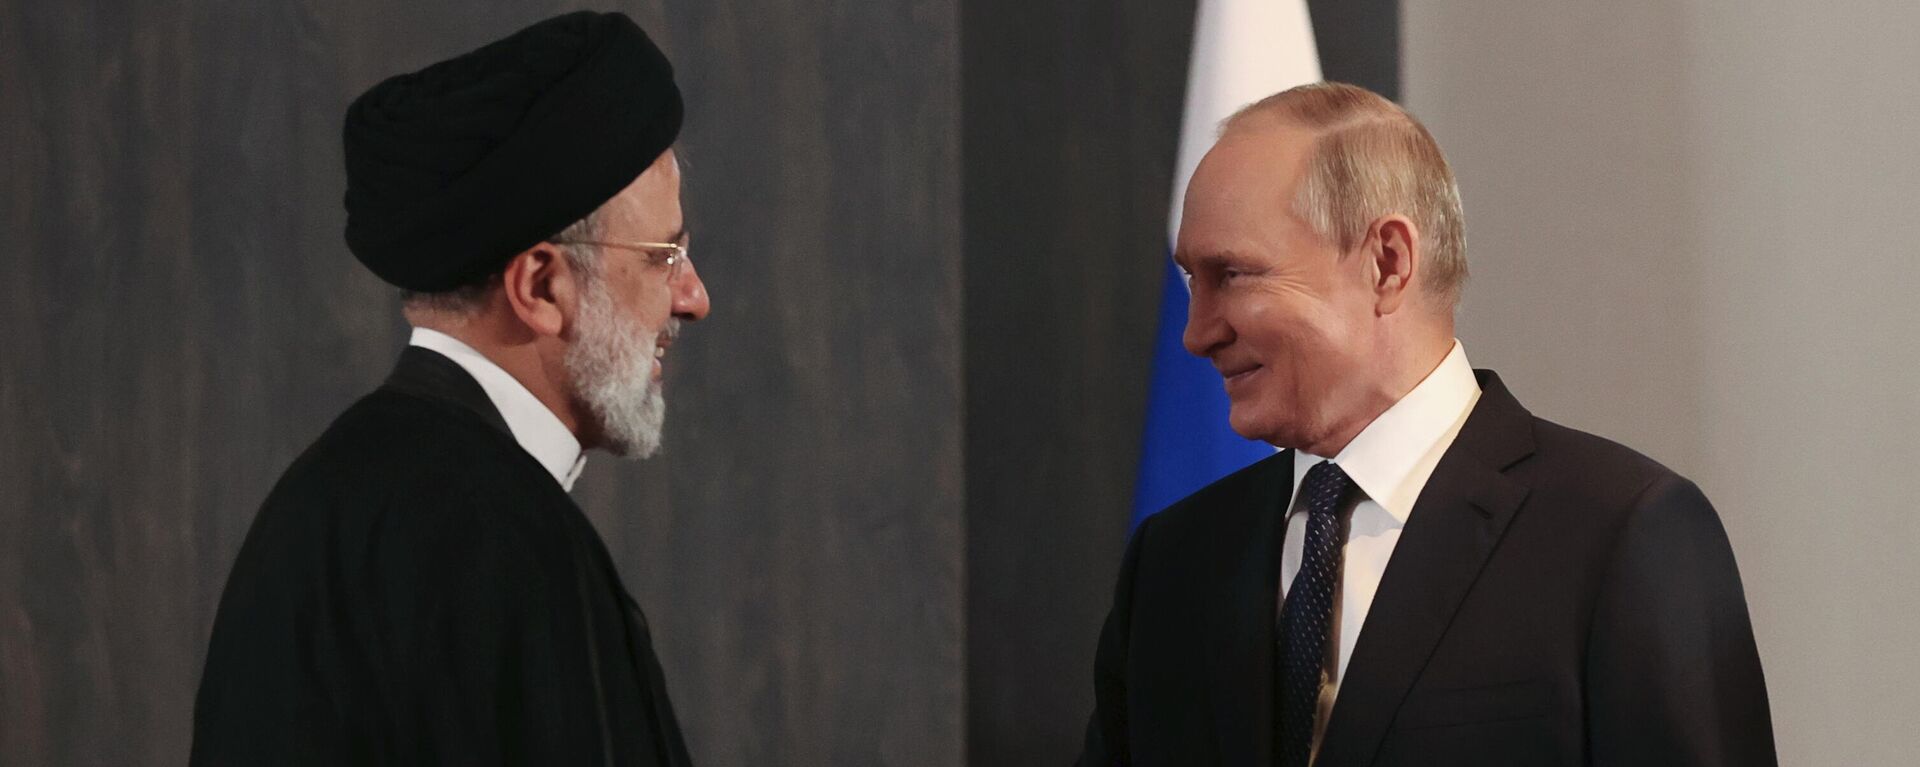 Predesdnik Rusije Vladimir Putin i predsednik Irana Ibrahim Raisi, ŠOS, Samarkande 2022 - Sputnik Srbija, 1920, 05.10.2022